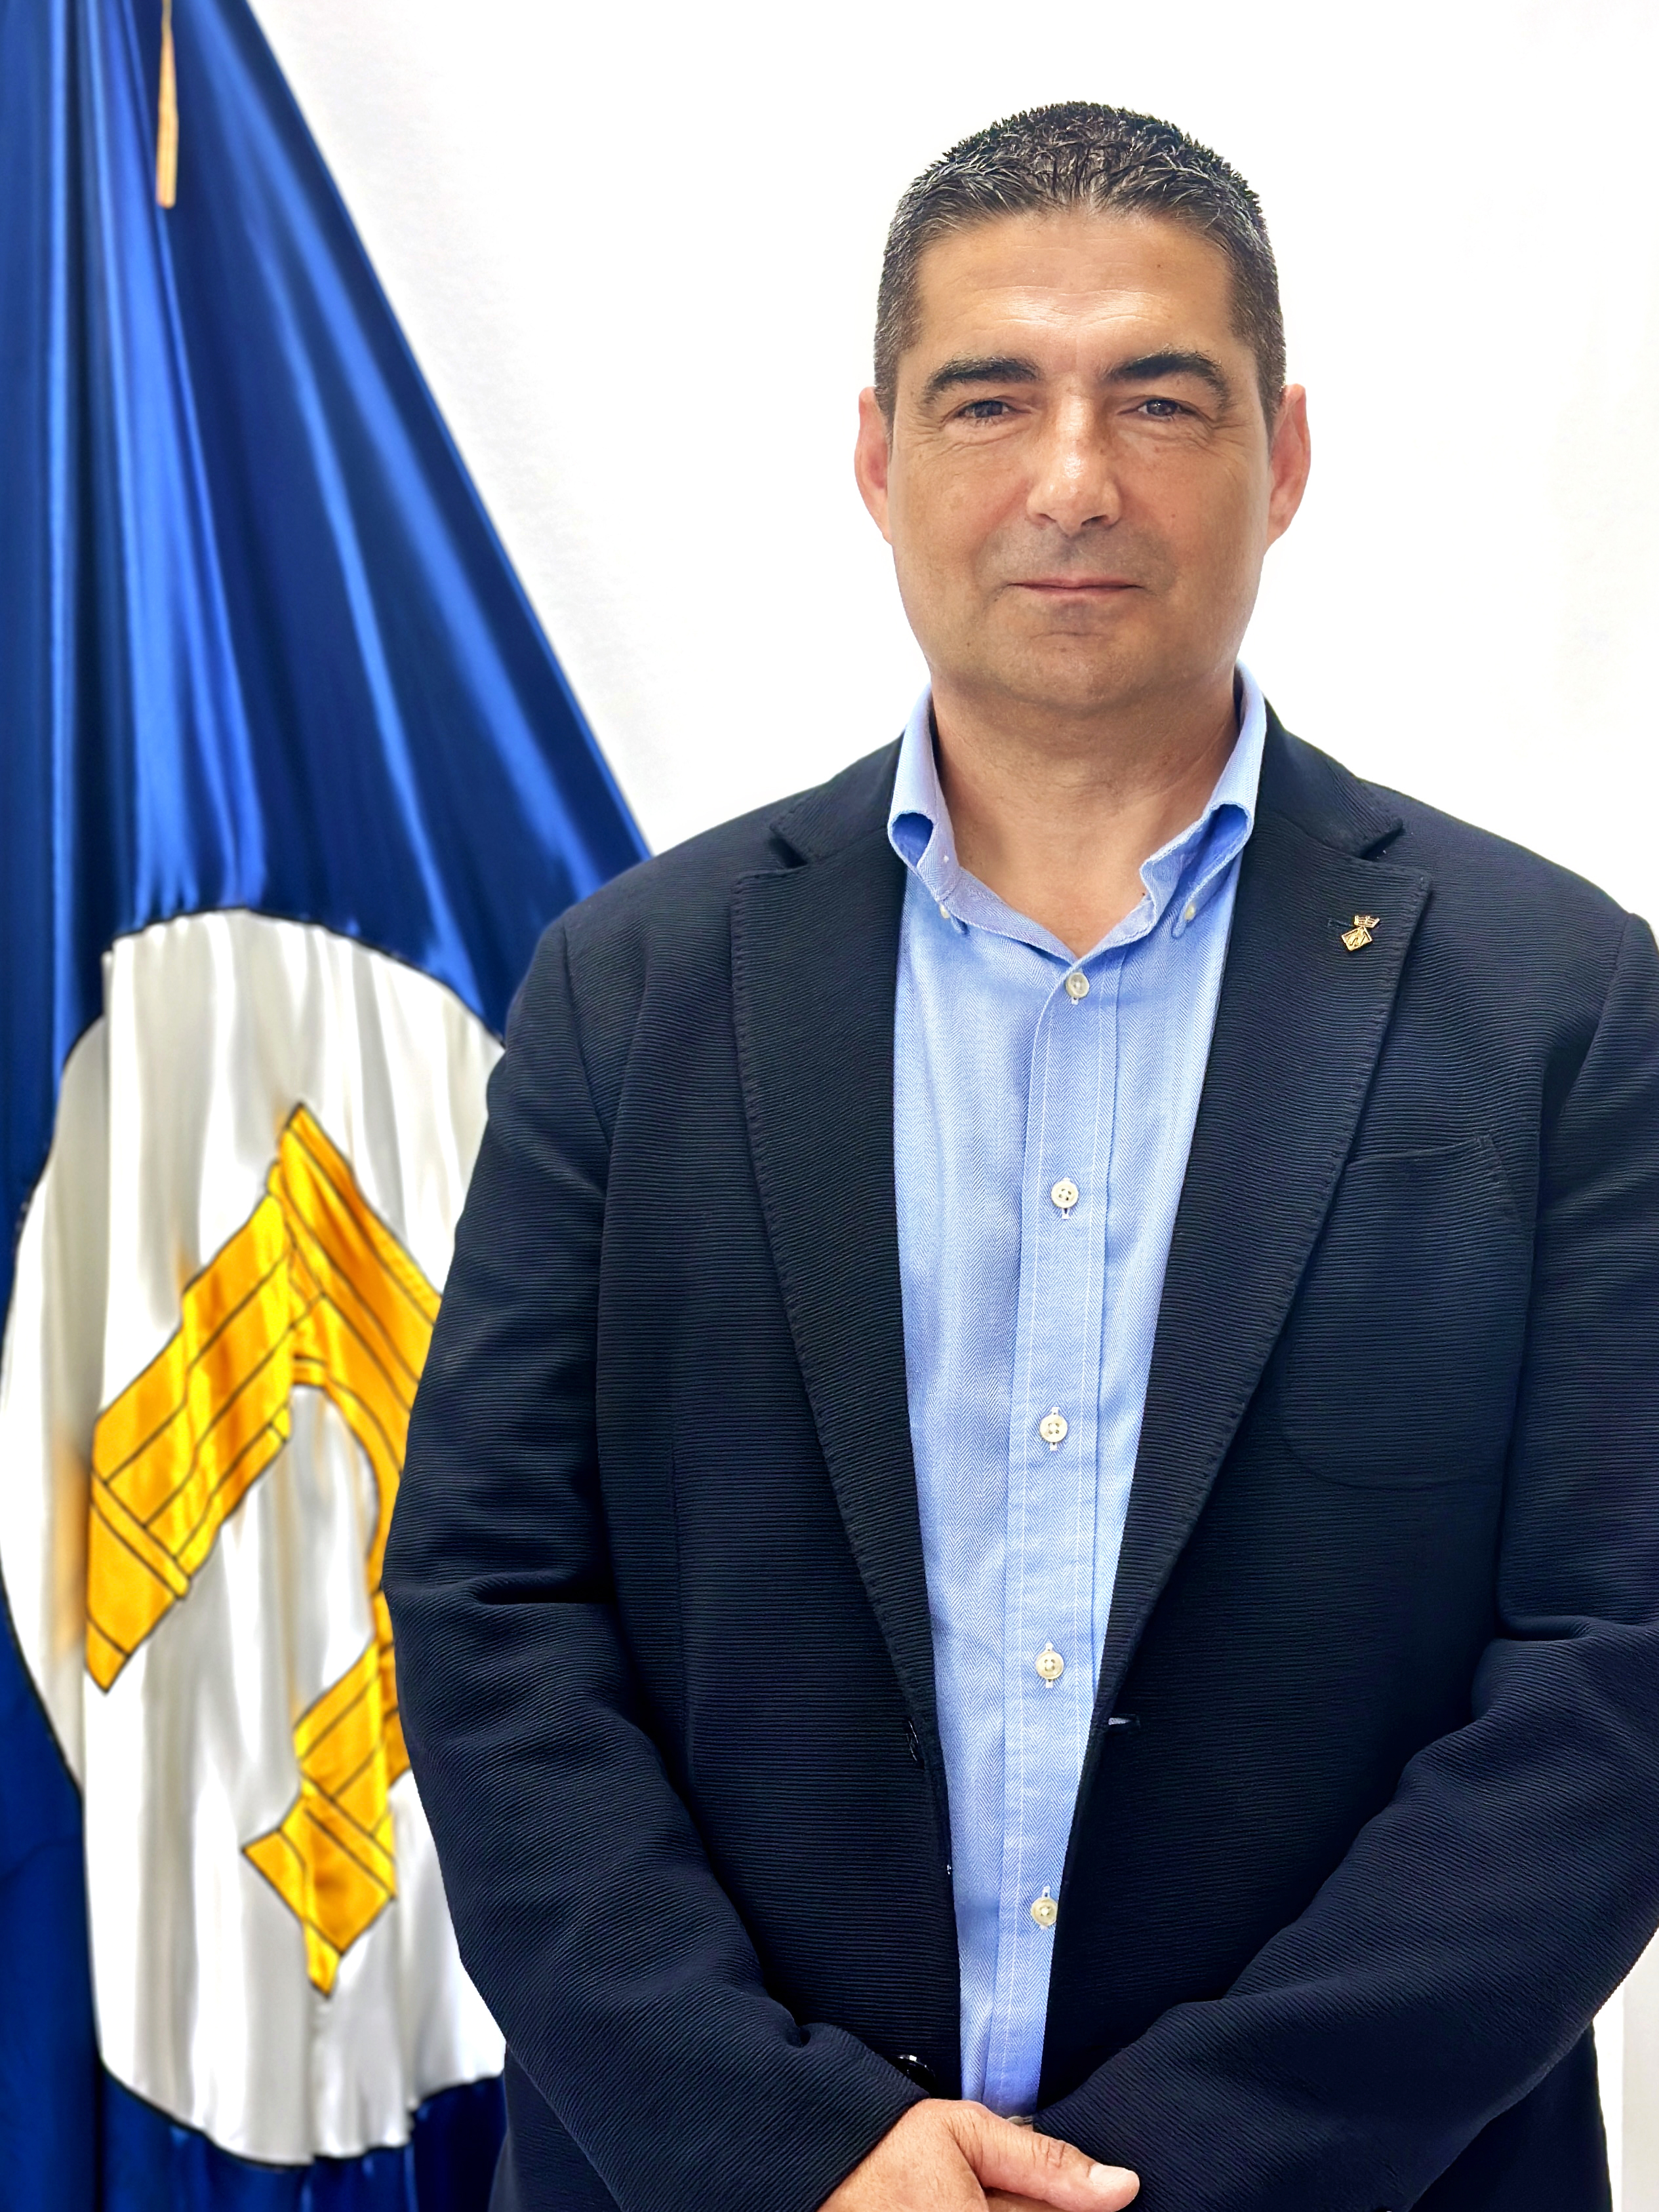 Daniel Izquierdo